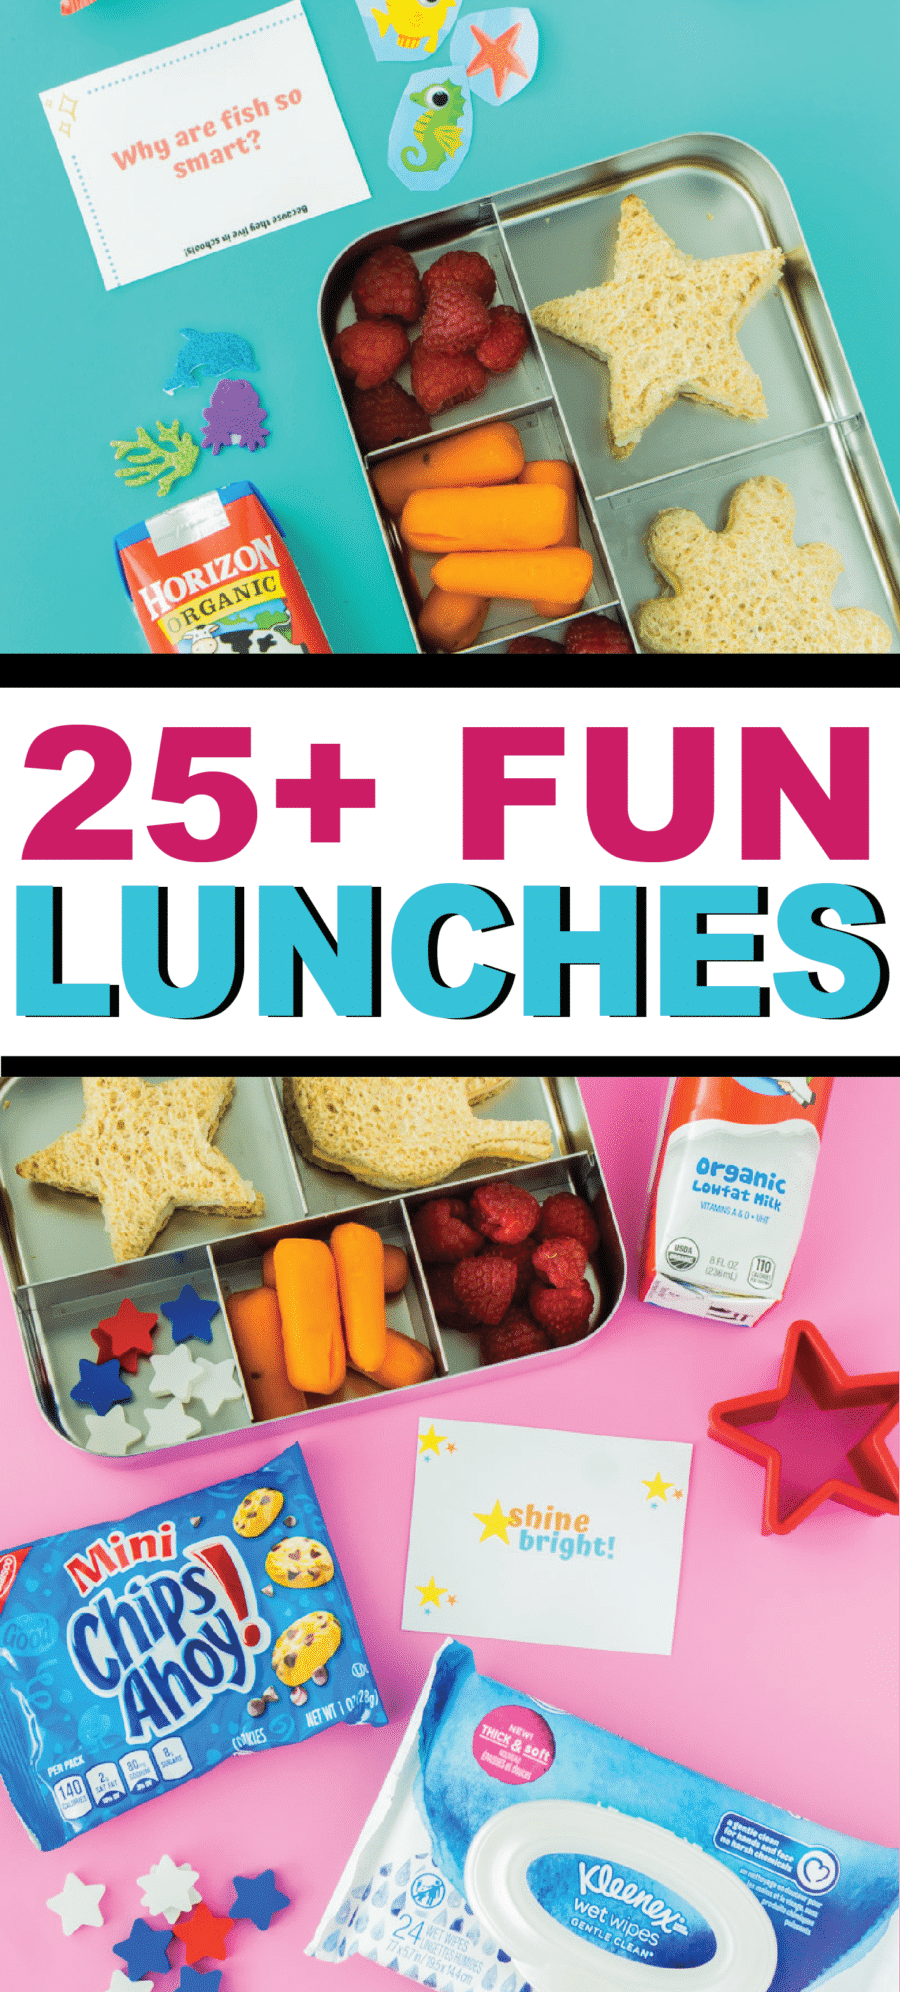 25 забавных идей для школьных обедов и множество бесплатных заметок, анекдотов и многого другого для печати!